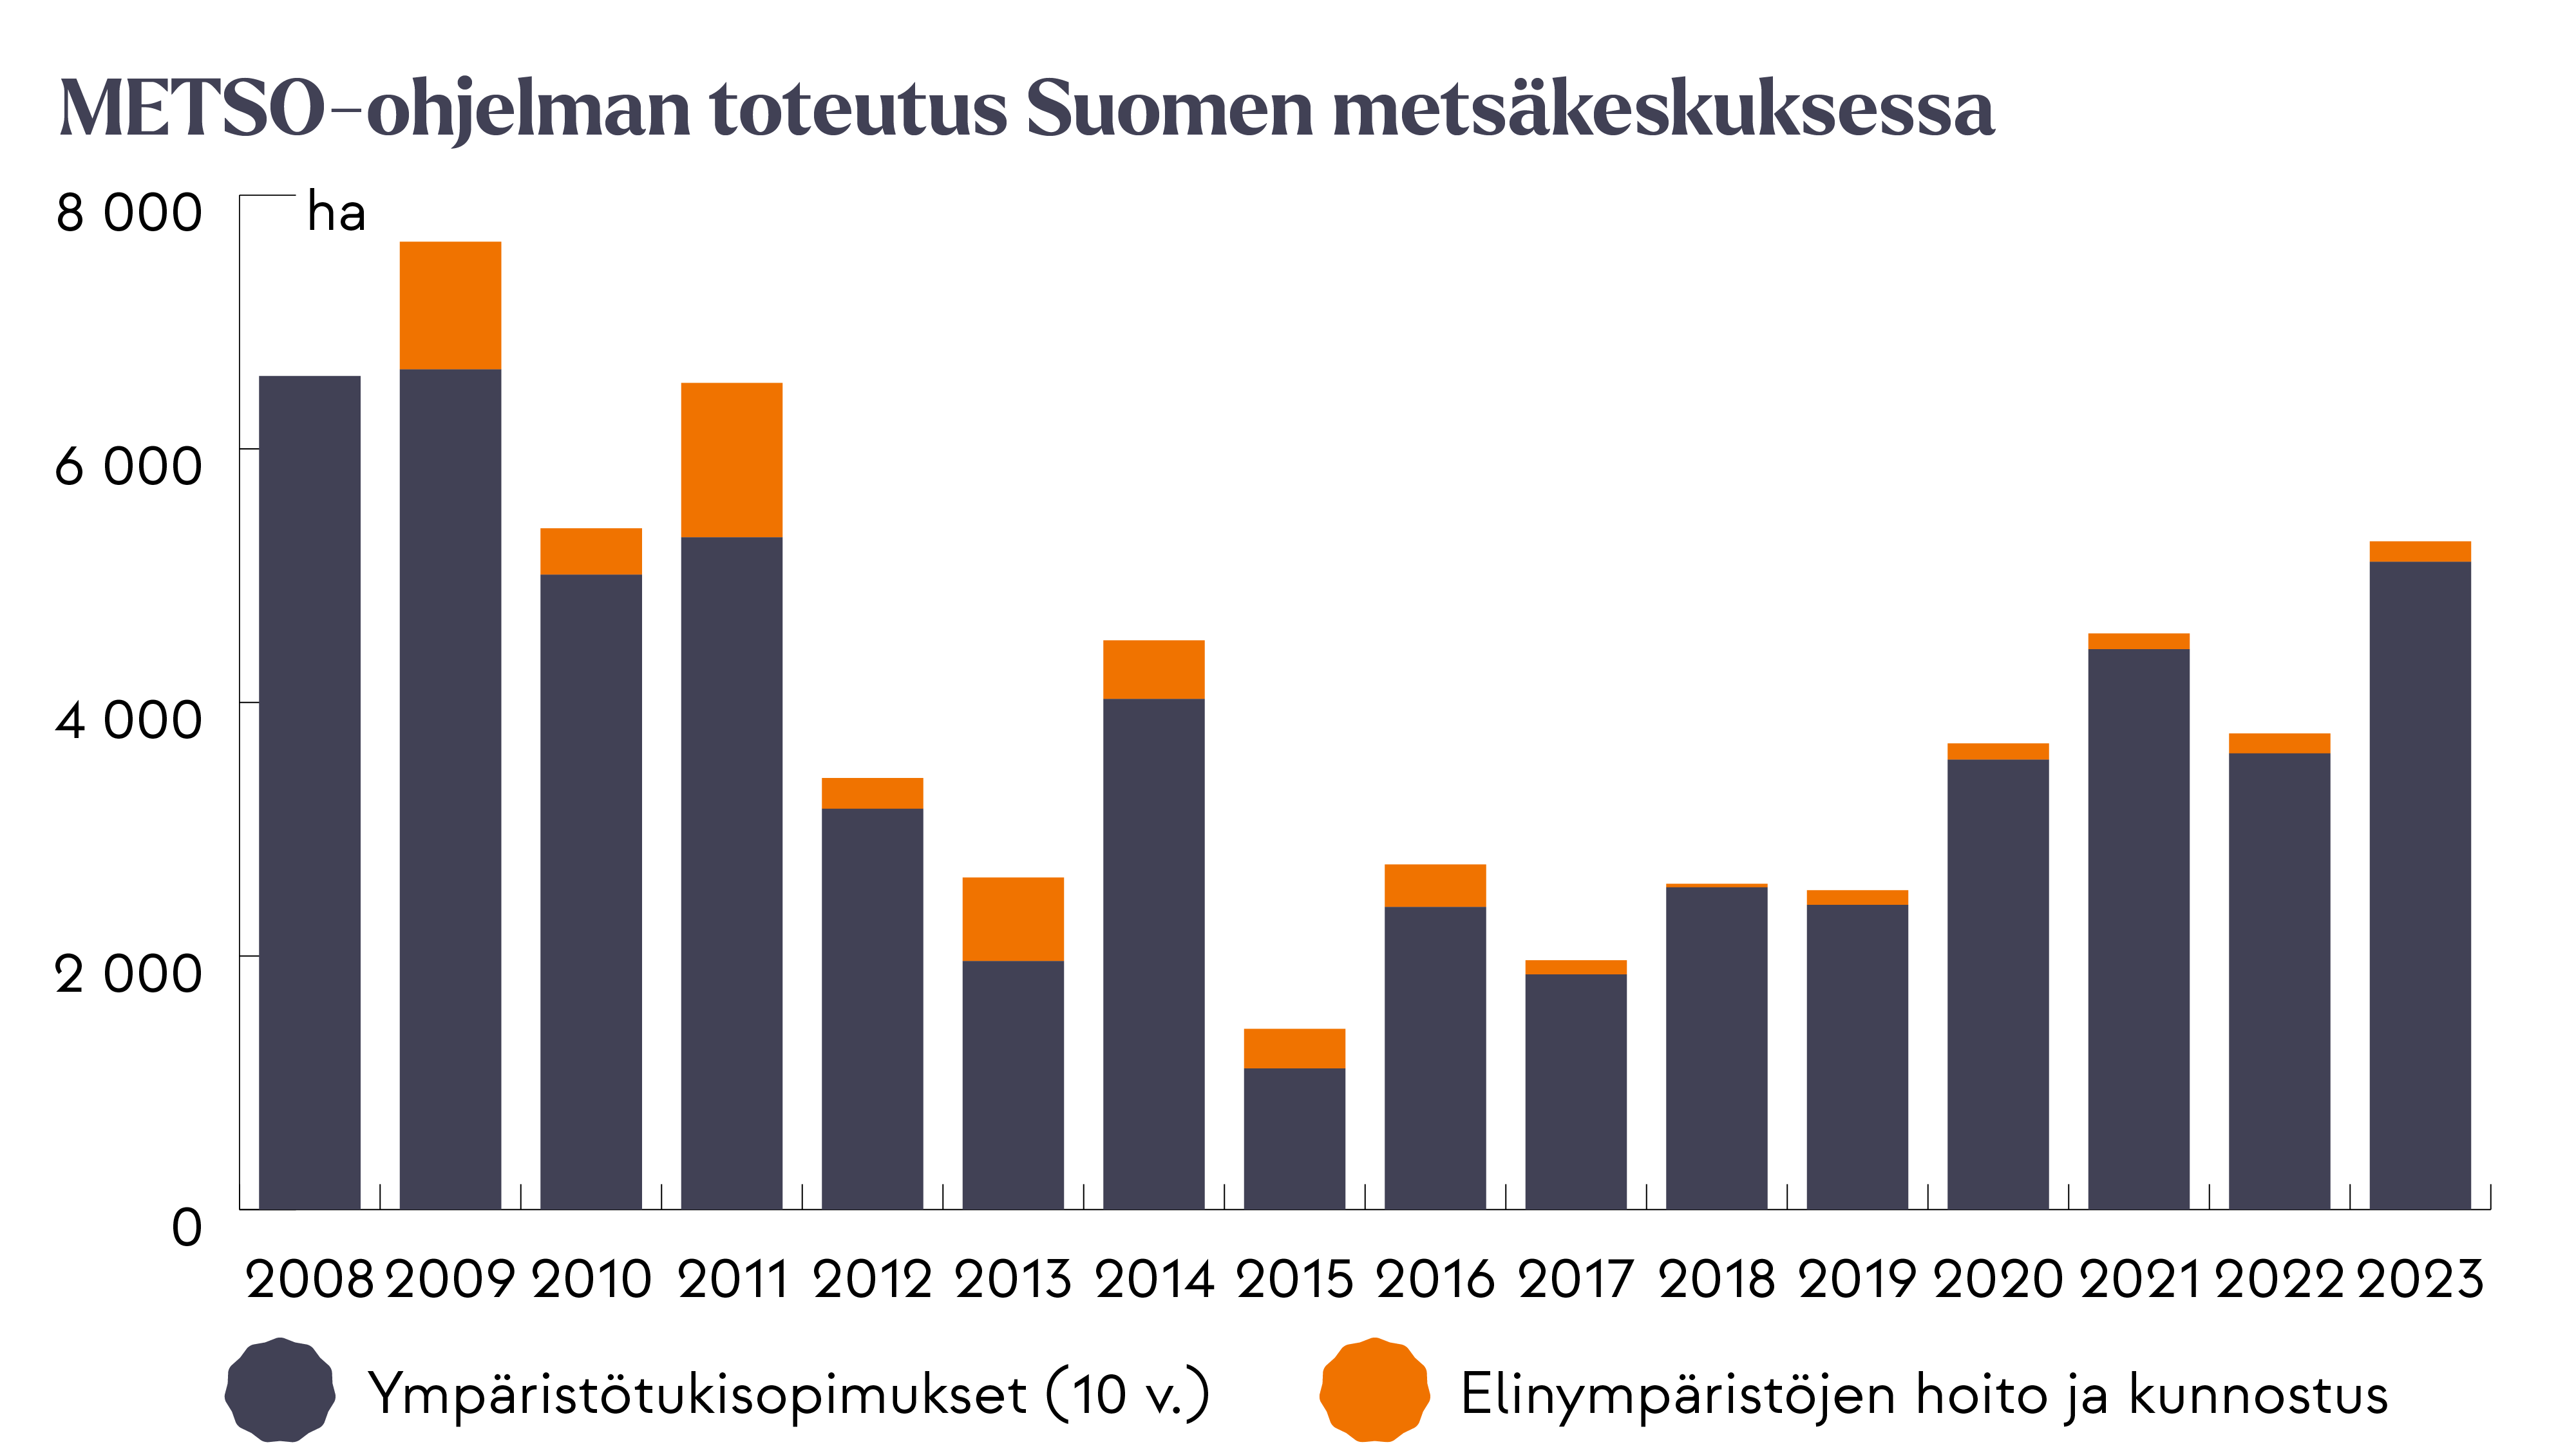 Pylväsdiagrammi, jossa näkyy Suomen metsäkeskuksen valmistelema METSO-ohjelmaan kuuluva metsien suojelun ja luonnonhoidon toteutus vuosina 2008 –2023. Diagrammissa on eroteltu vuodet ja eri suojelukeinot (kymmenvuotiset ympäristötukisopimukset sekä elinympäristöjen hoito ja kunnostus). Toteutusmäärät ovat vaihdelleet noin tuhannesta hehtaarista 7 500 hehtaariin vuodessa.